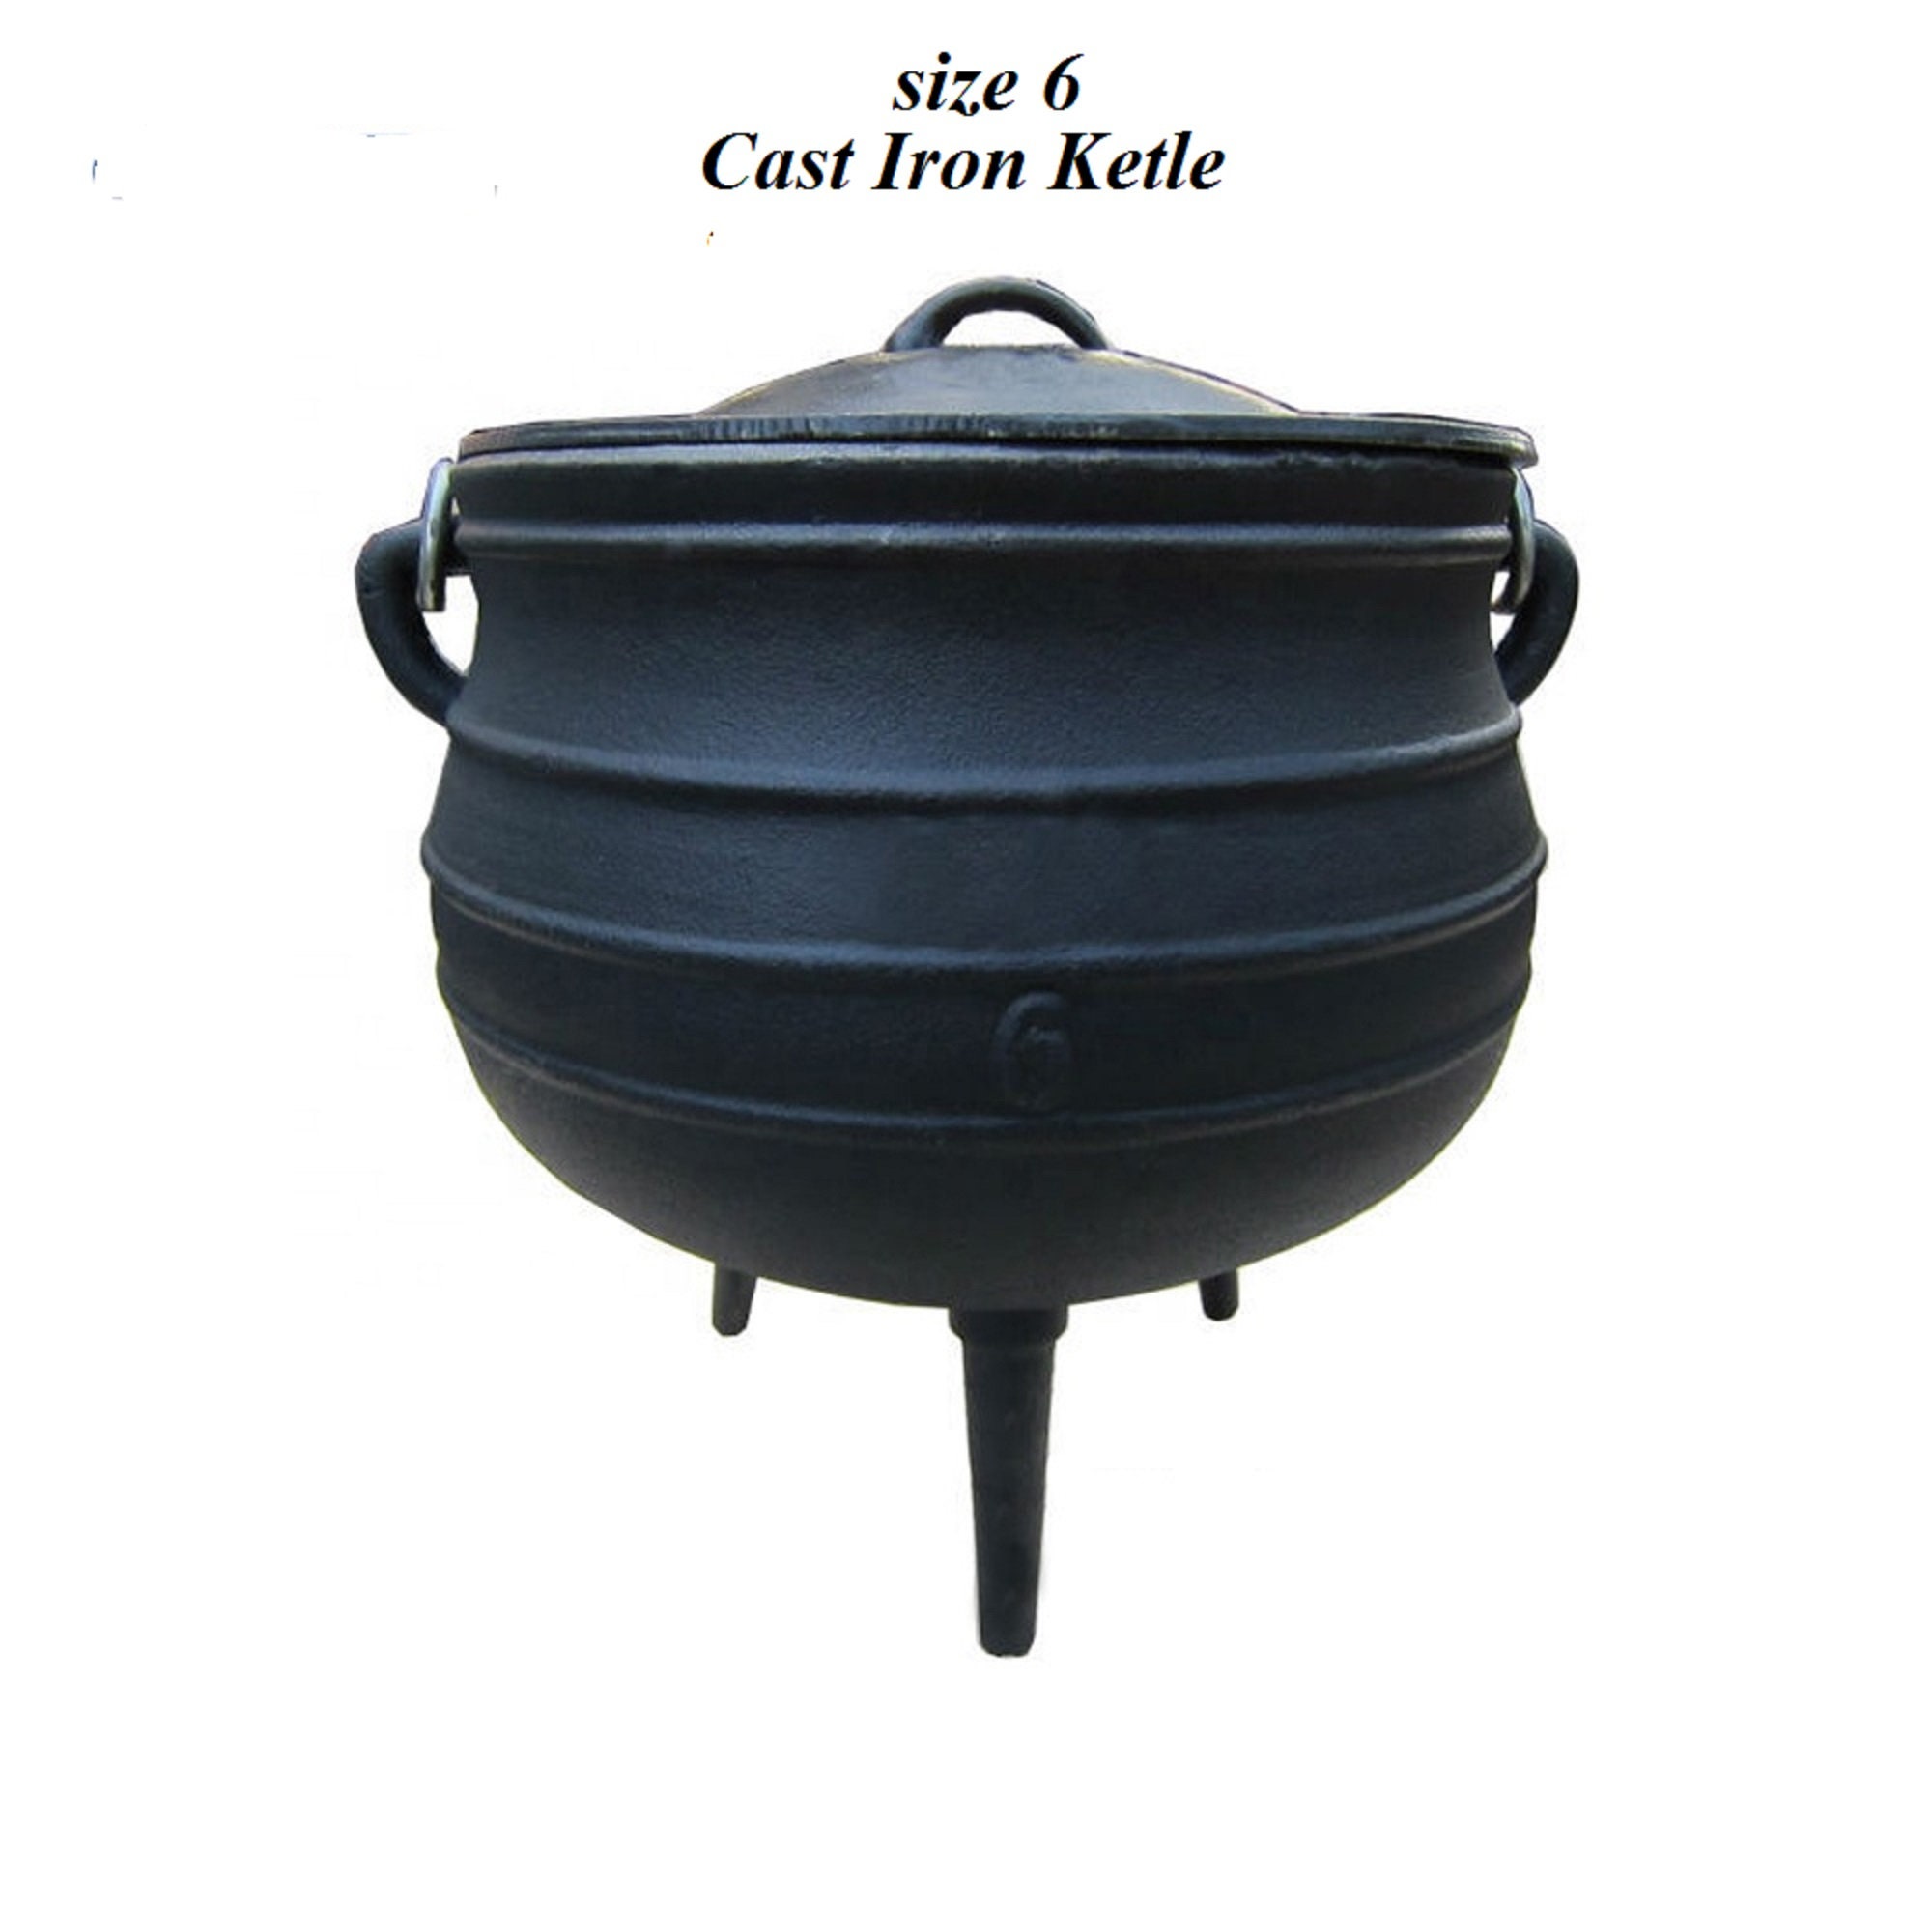 Potjie Pot #2 Three Leg Cast Iron Kettle-1.25 gal